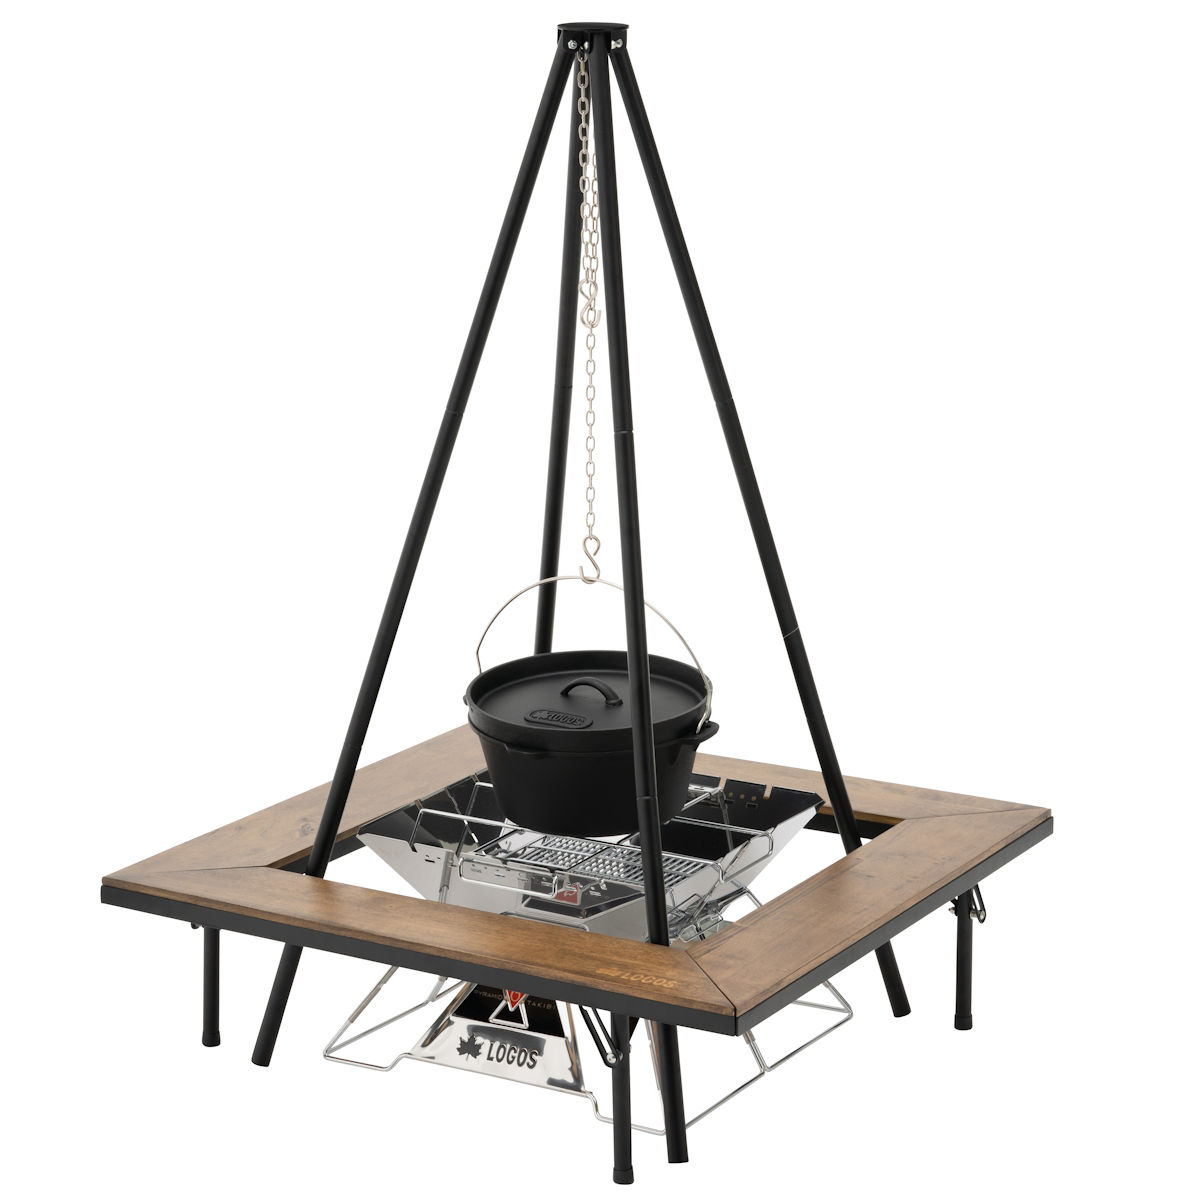 ロゴス(LOGOS) テーブル ウッド囲炉裏テーブル EVO 木製 ピラミッドグリル対応 キャリーバッグ付き tf8su2k